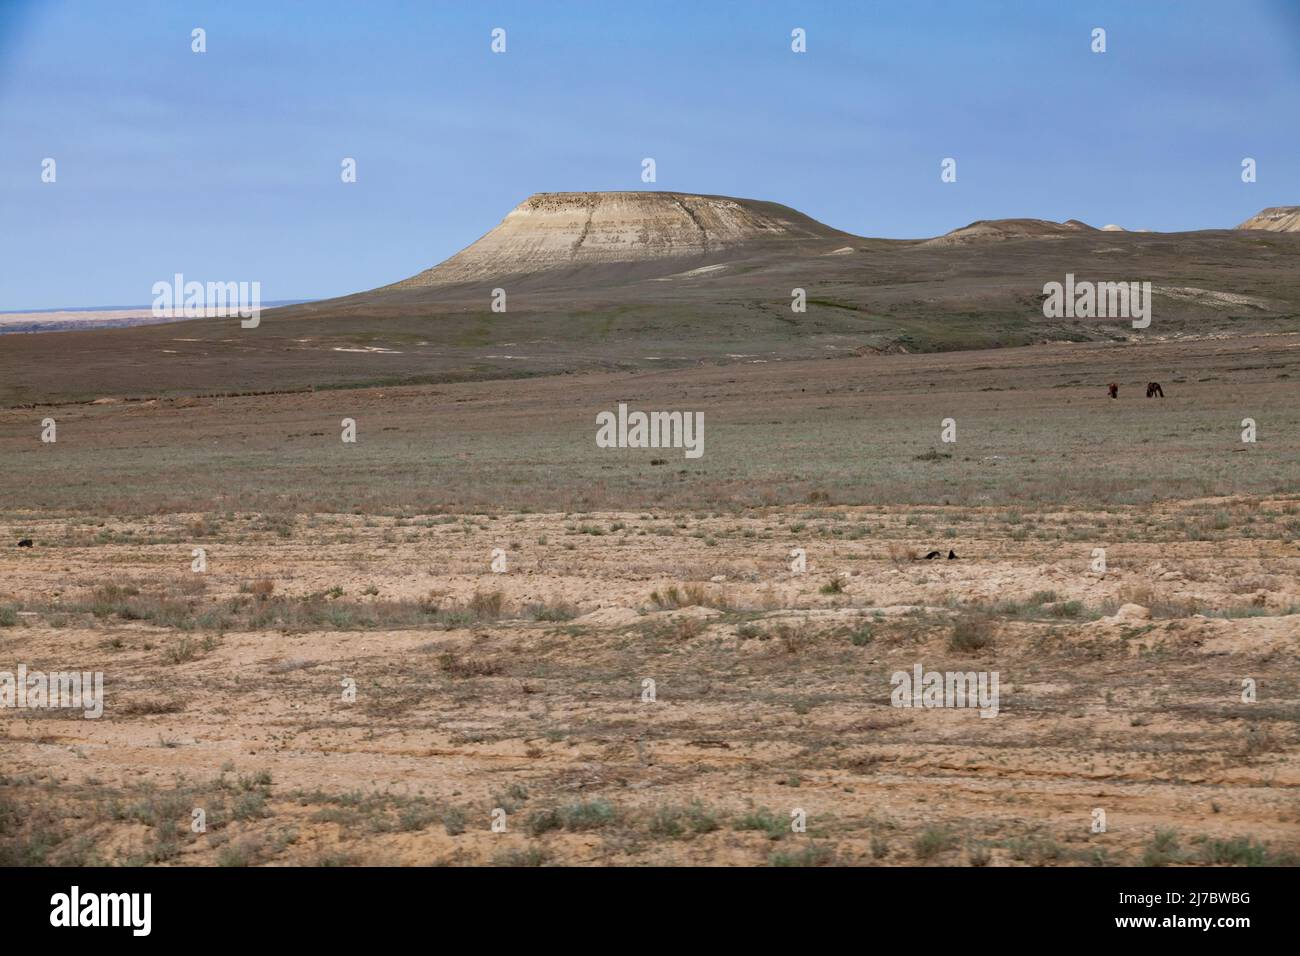 Scenic view on hill in desert. Kazakhstan Stock Photo